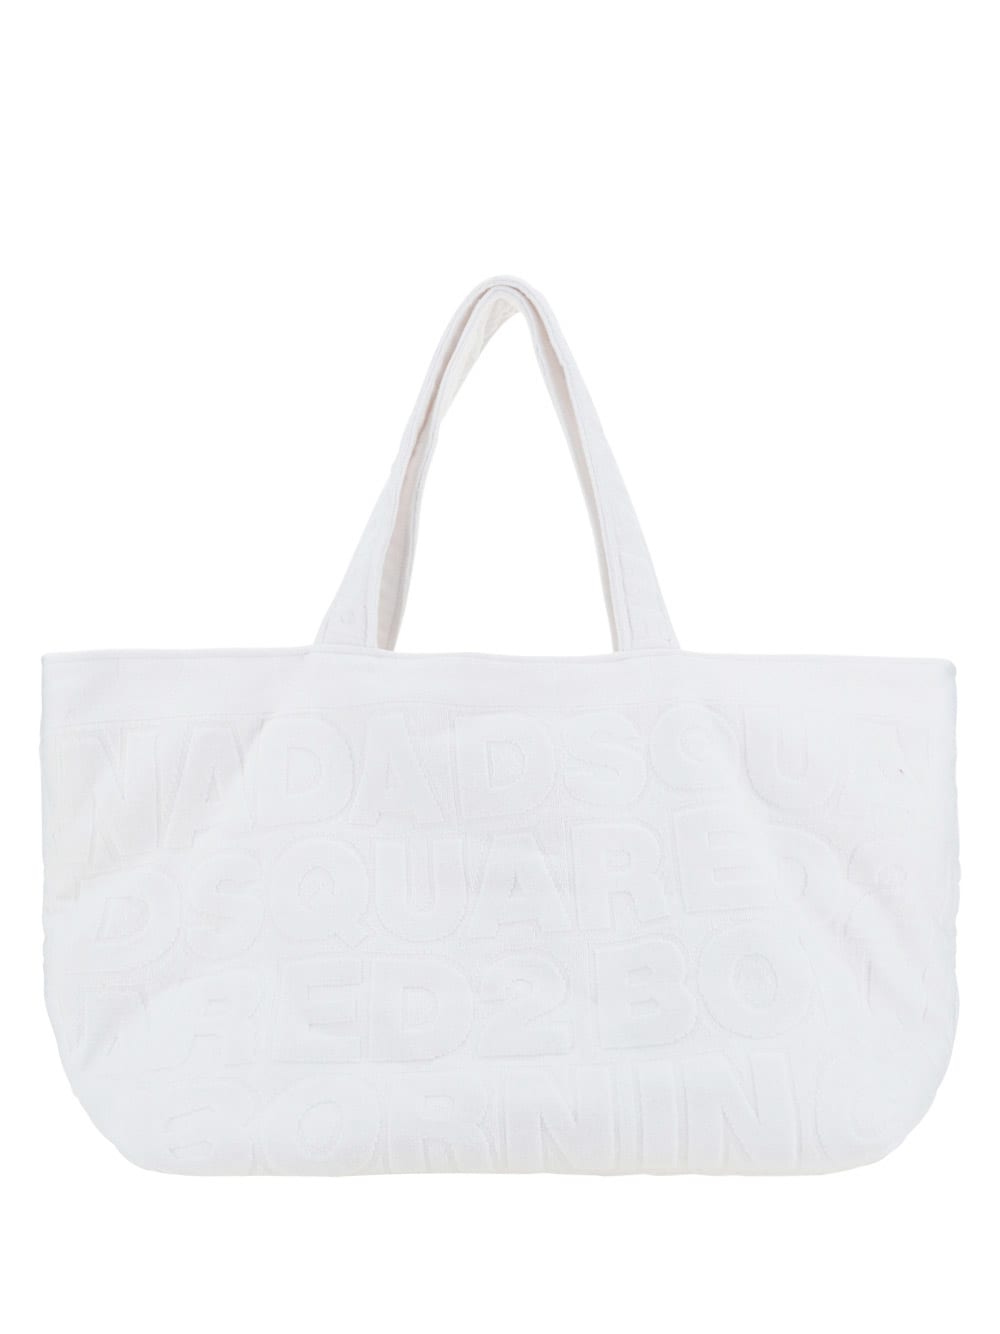 White Twin Beach Shopping Bag